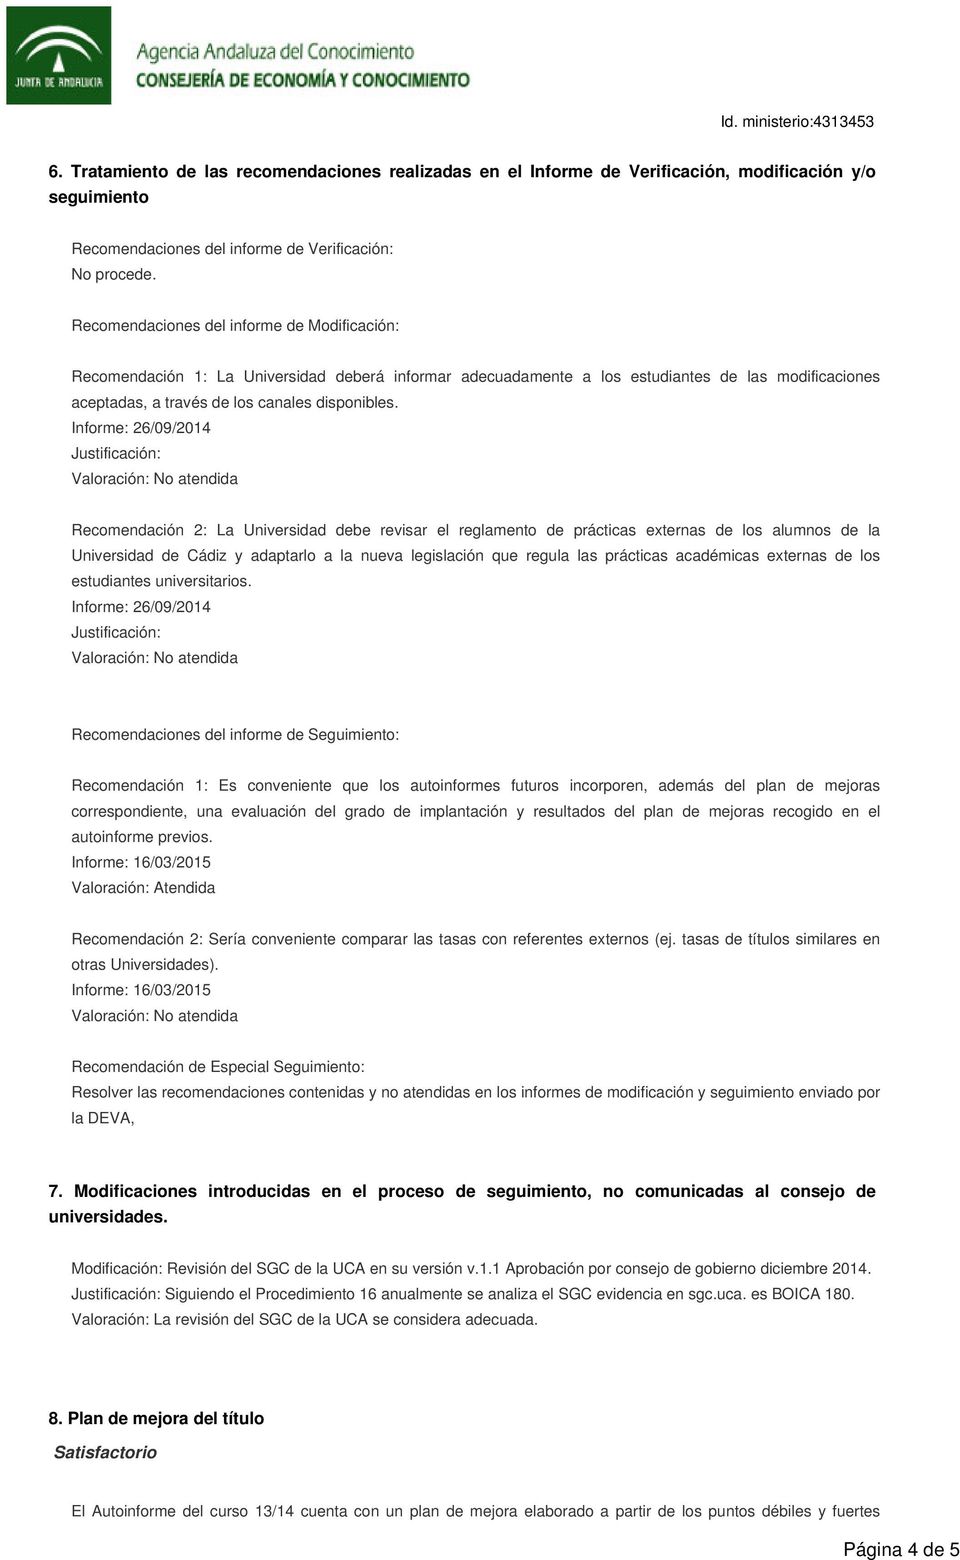 Informe: 26/09/2014 Justificación: Recomendación 2: La Universidad debe revisar el reglamento de prácticas externas de los alumnos de la Universidad de Cádiz y adaptarlo a la nueva legislación que